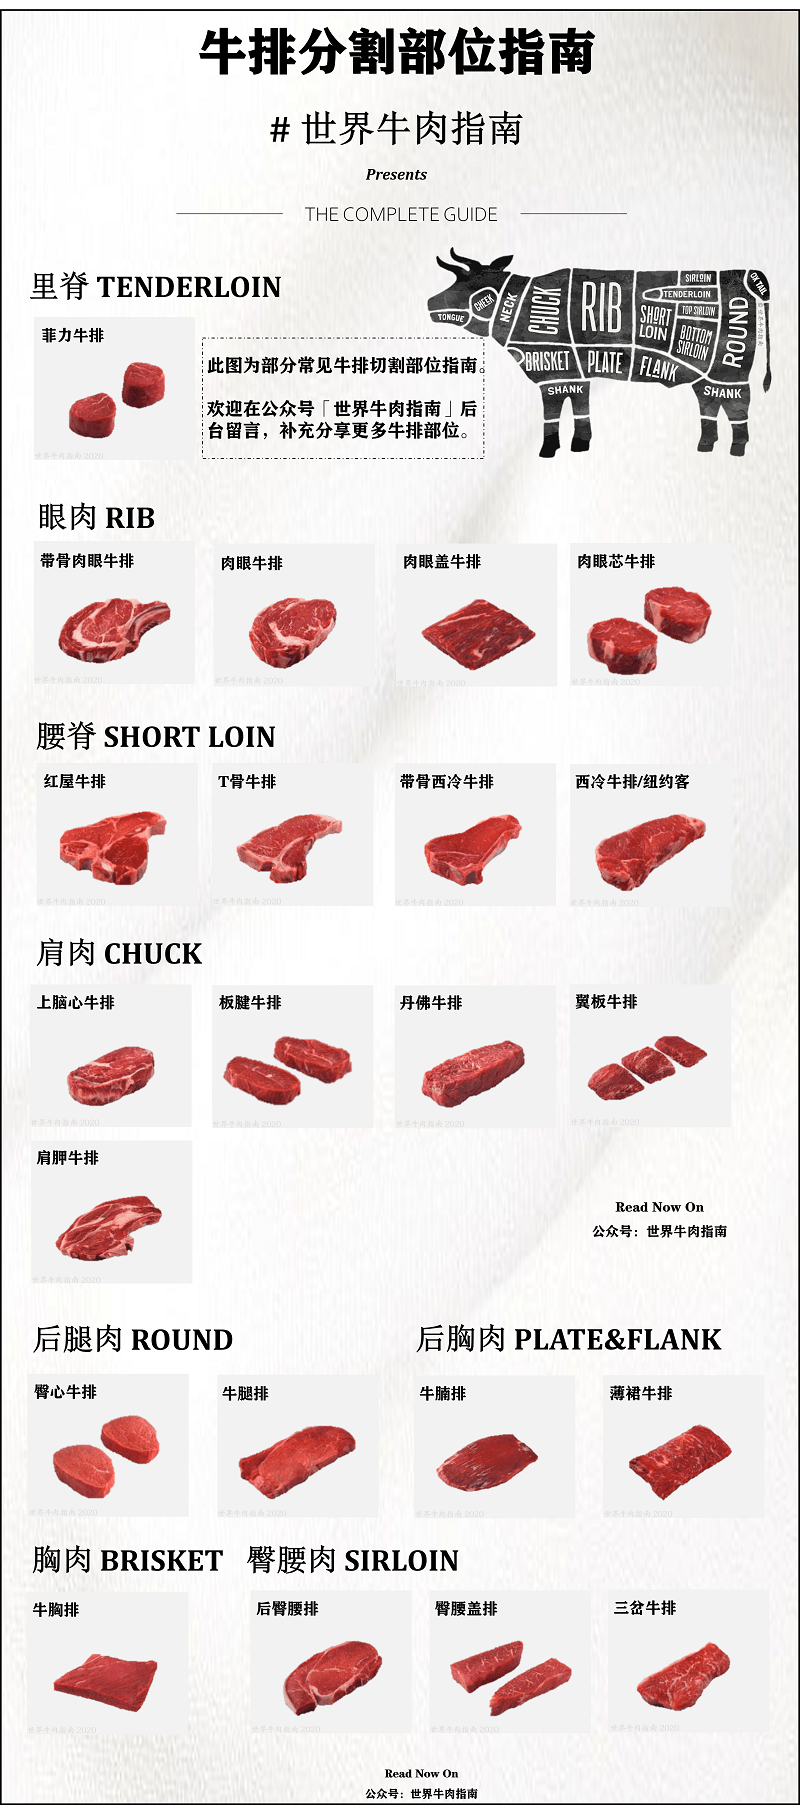 日本牛肉等级划分图片